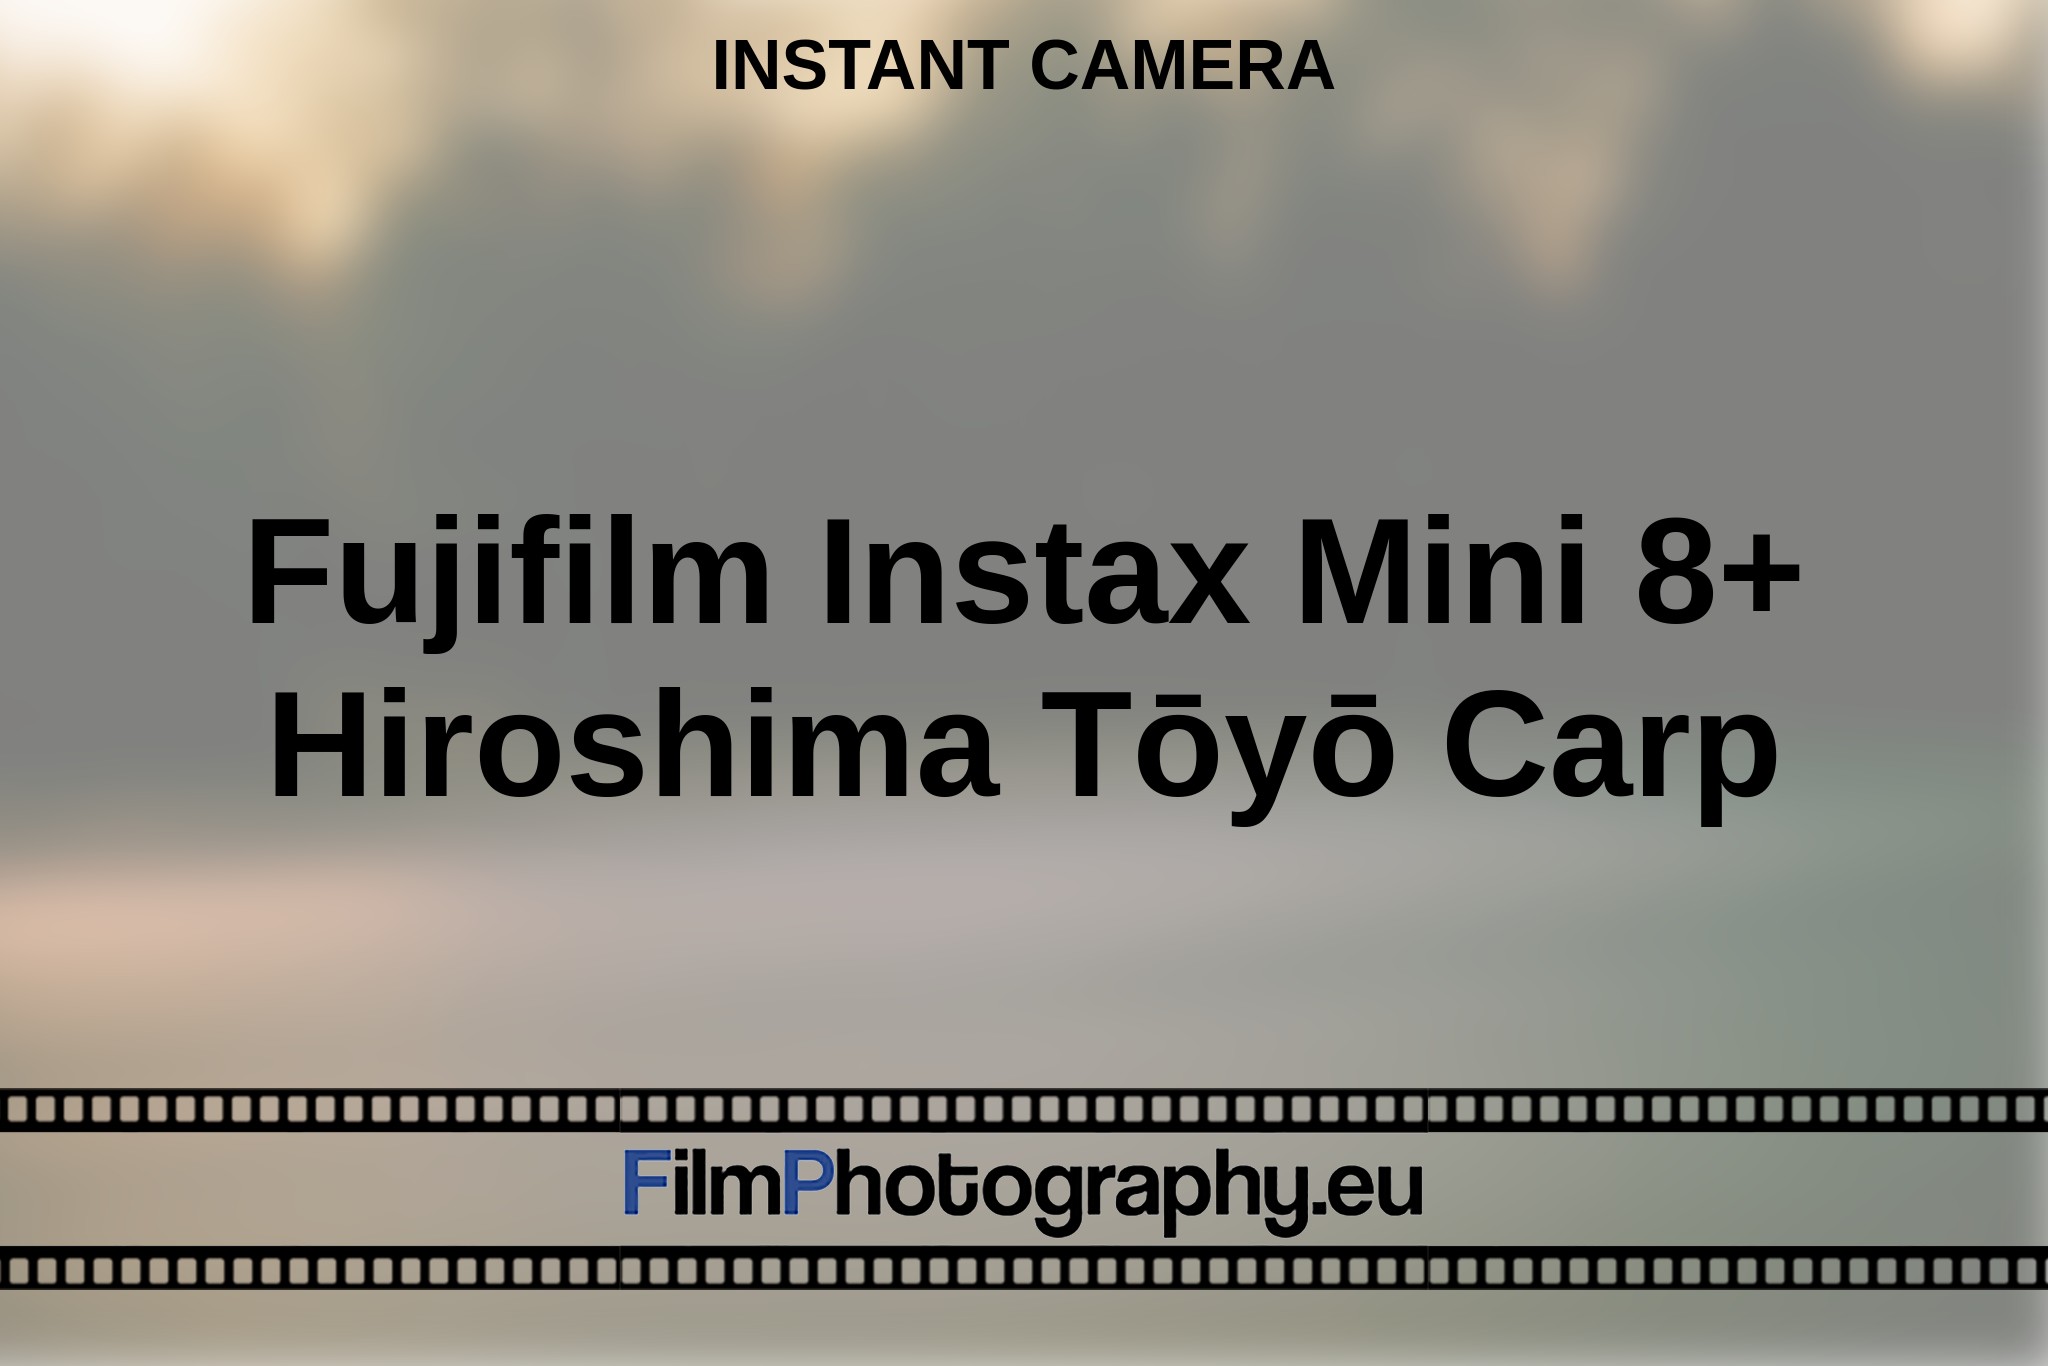 fujifilm-instax-mini-8-hiroshima-tōyō-carp-instant-camera-en-bnv.jpg